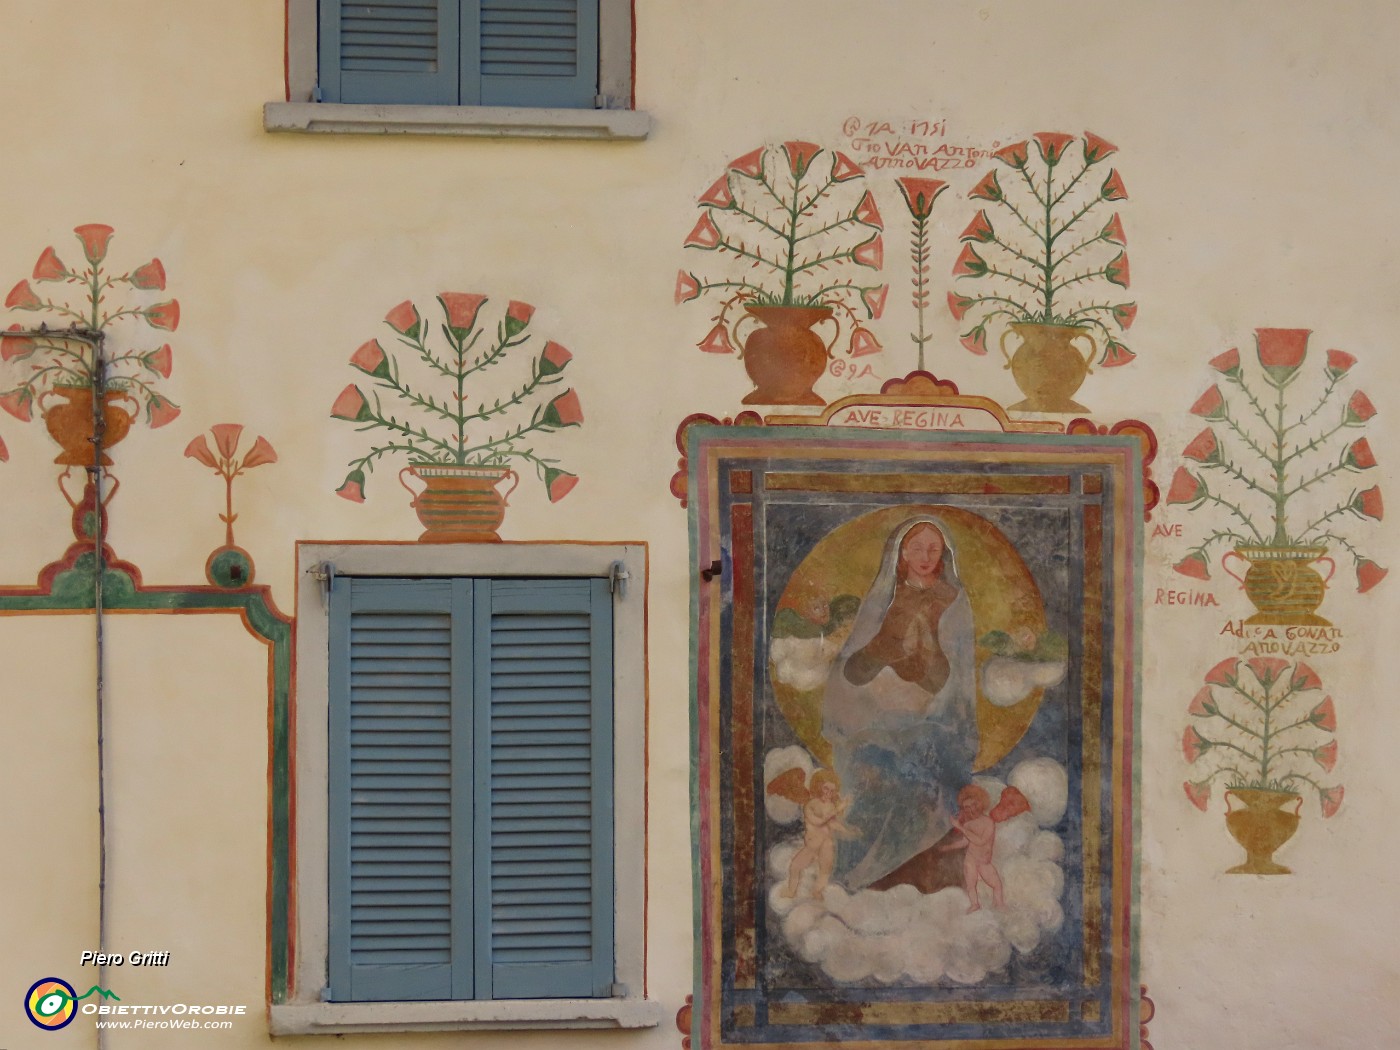 13 Belle decorazioni sulla facciata di casa GiovanAntonio Annovazzo.JPG